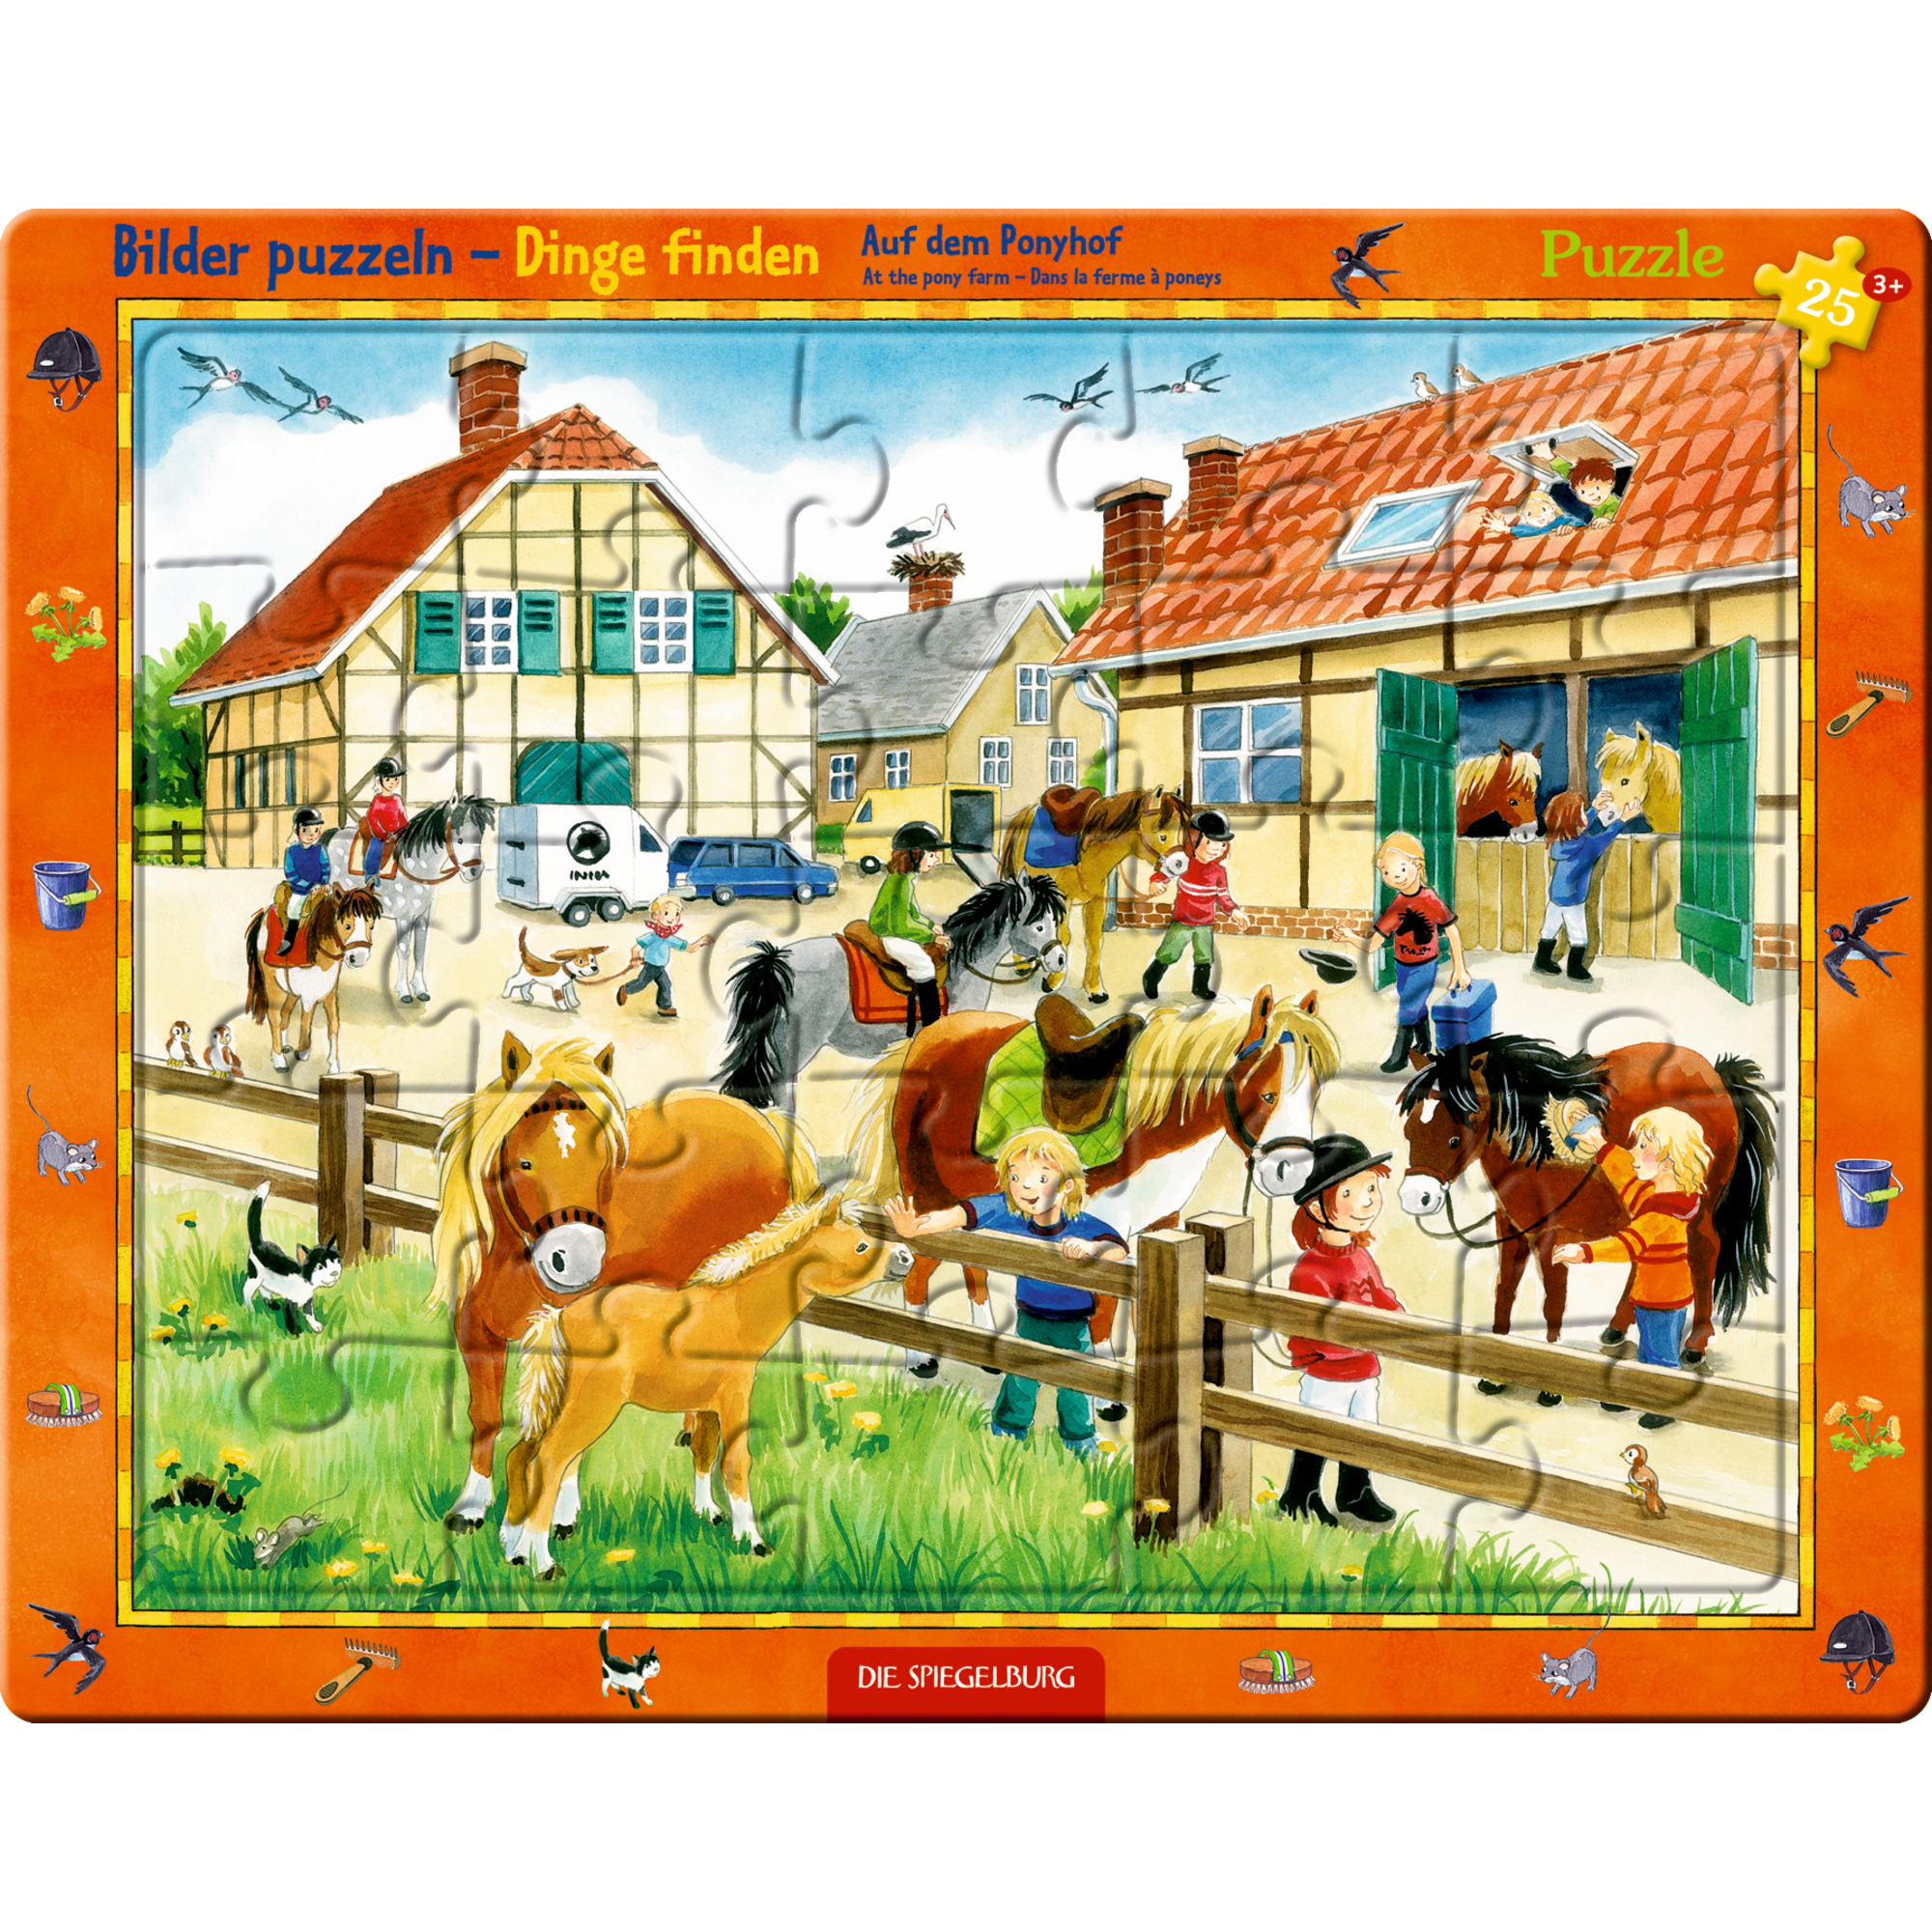 Rahmenpuzzle - Auf dem Ponyhof DIE SPIEGELBURG 2000585174408 1